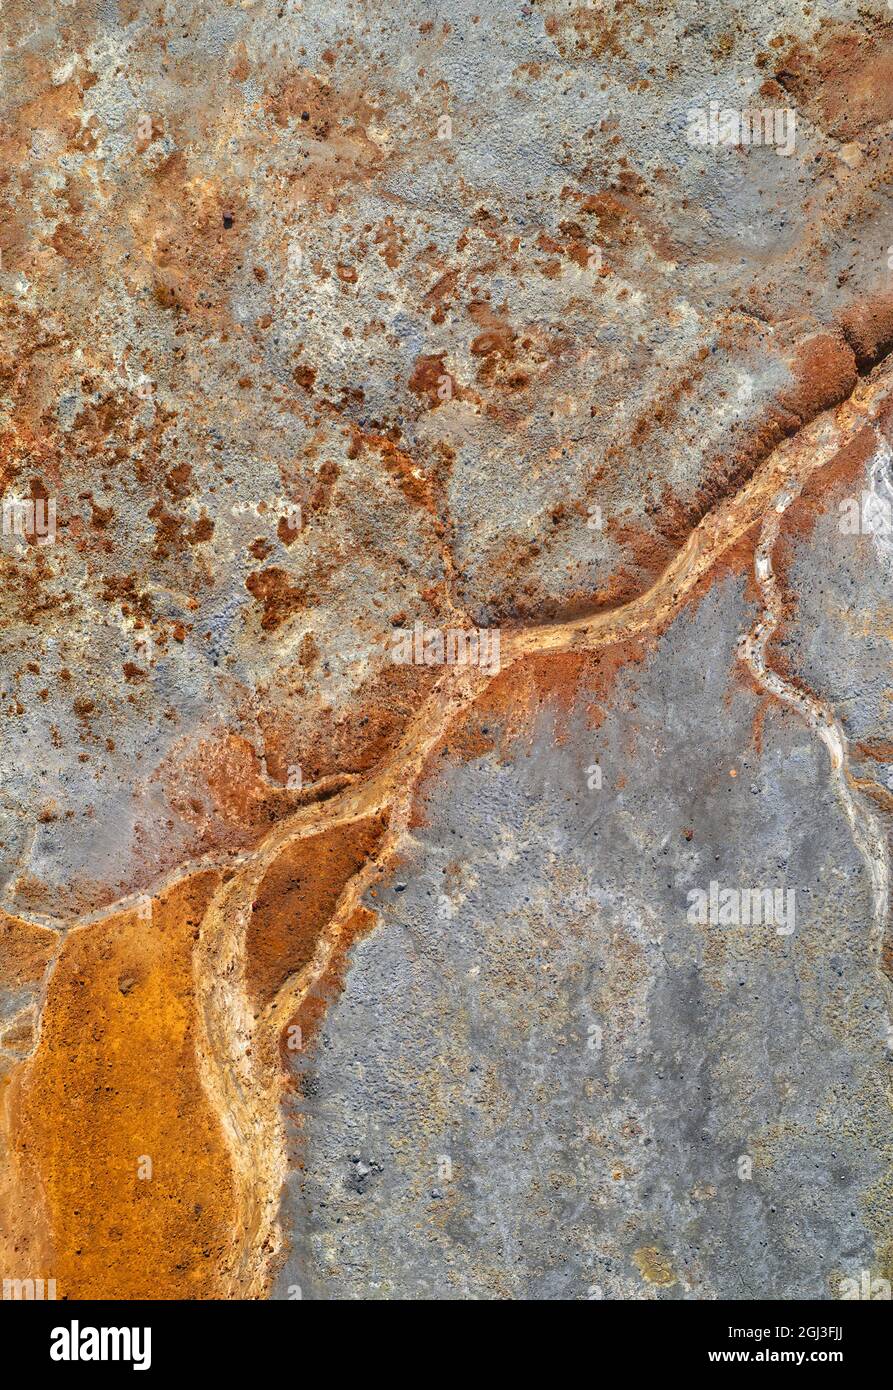 Lecho de río oxidado seco sobre residuos de mina gris, textura vertical de drenaje de mina ácida Foto de stock